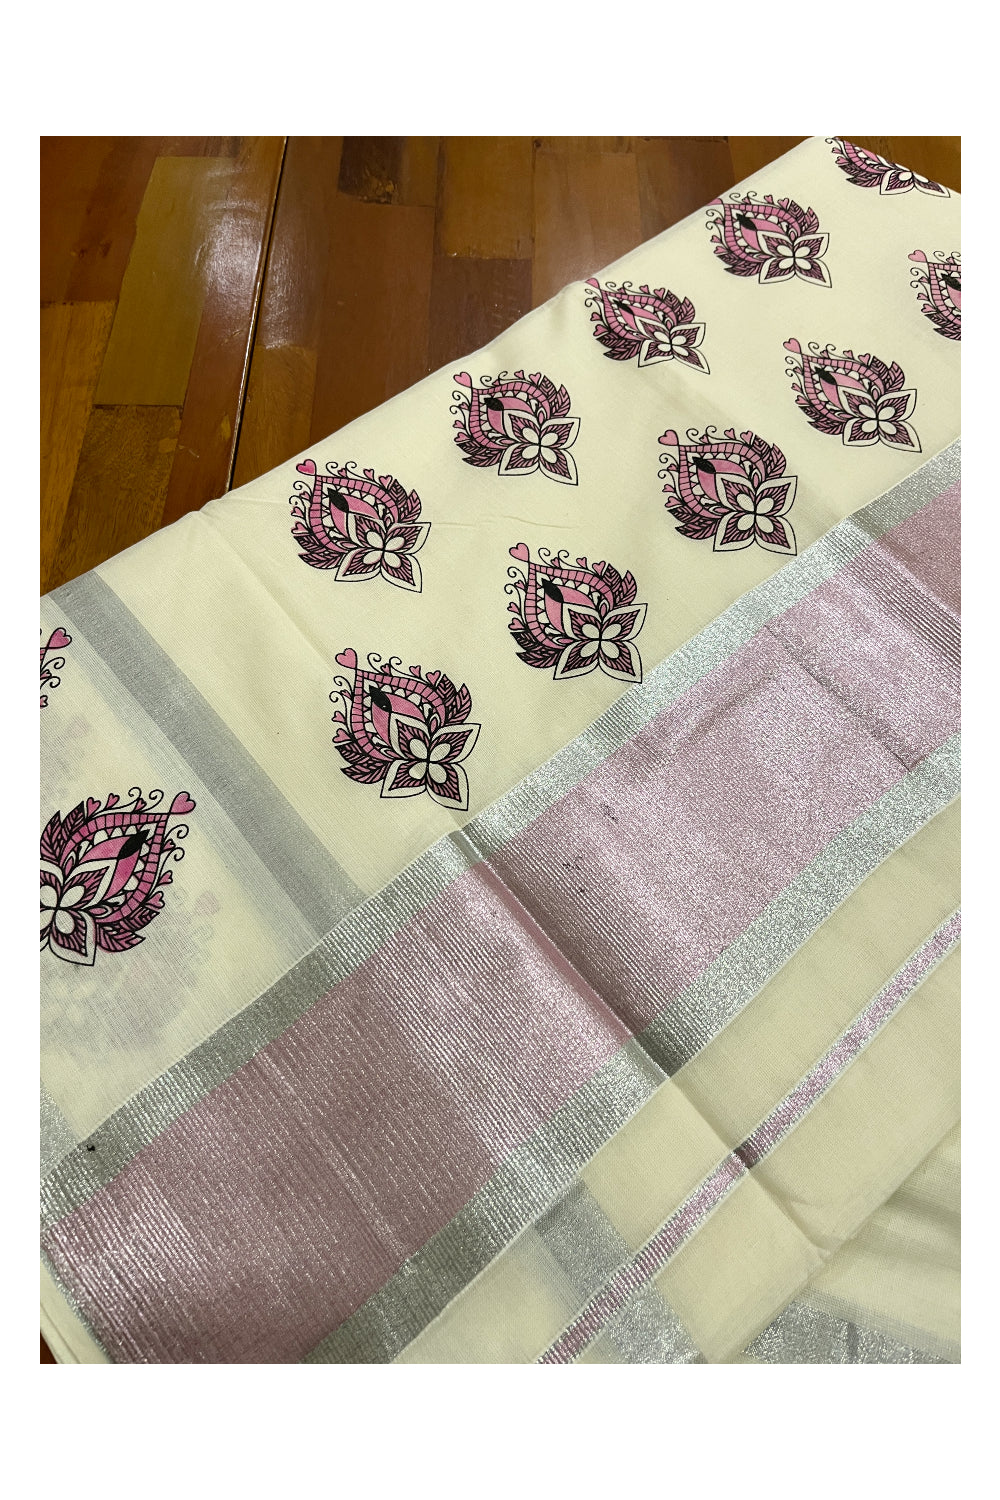 Kerala Cotton Silver and Pink Kasavu Border Saree with Block Printed Design